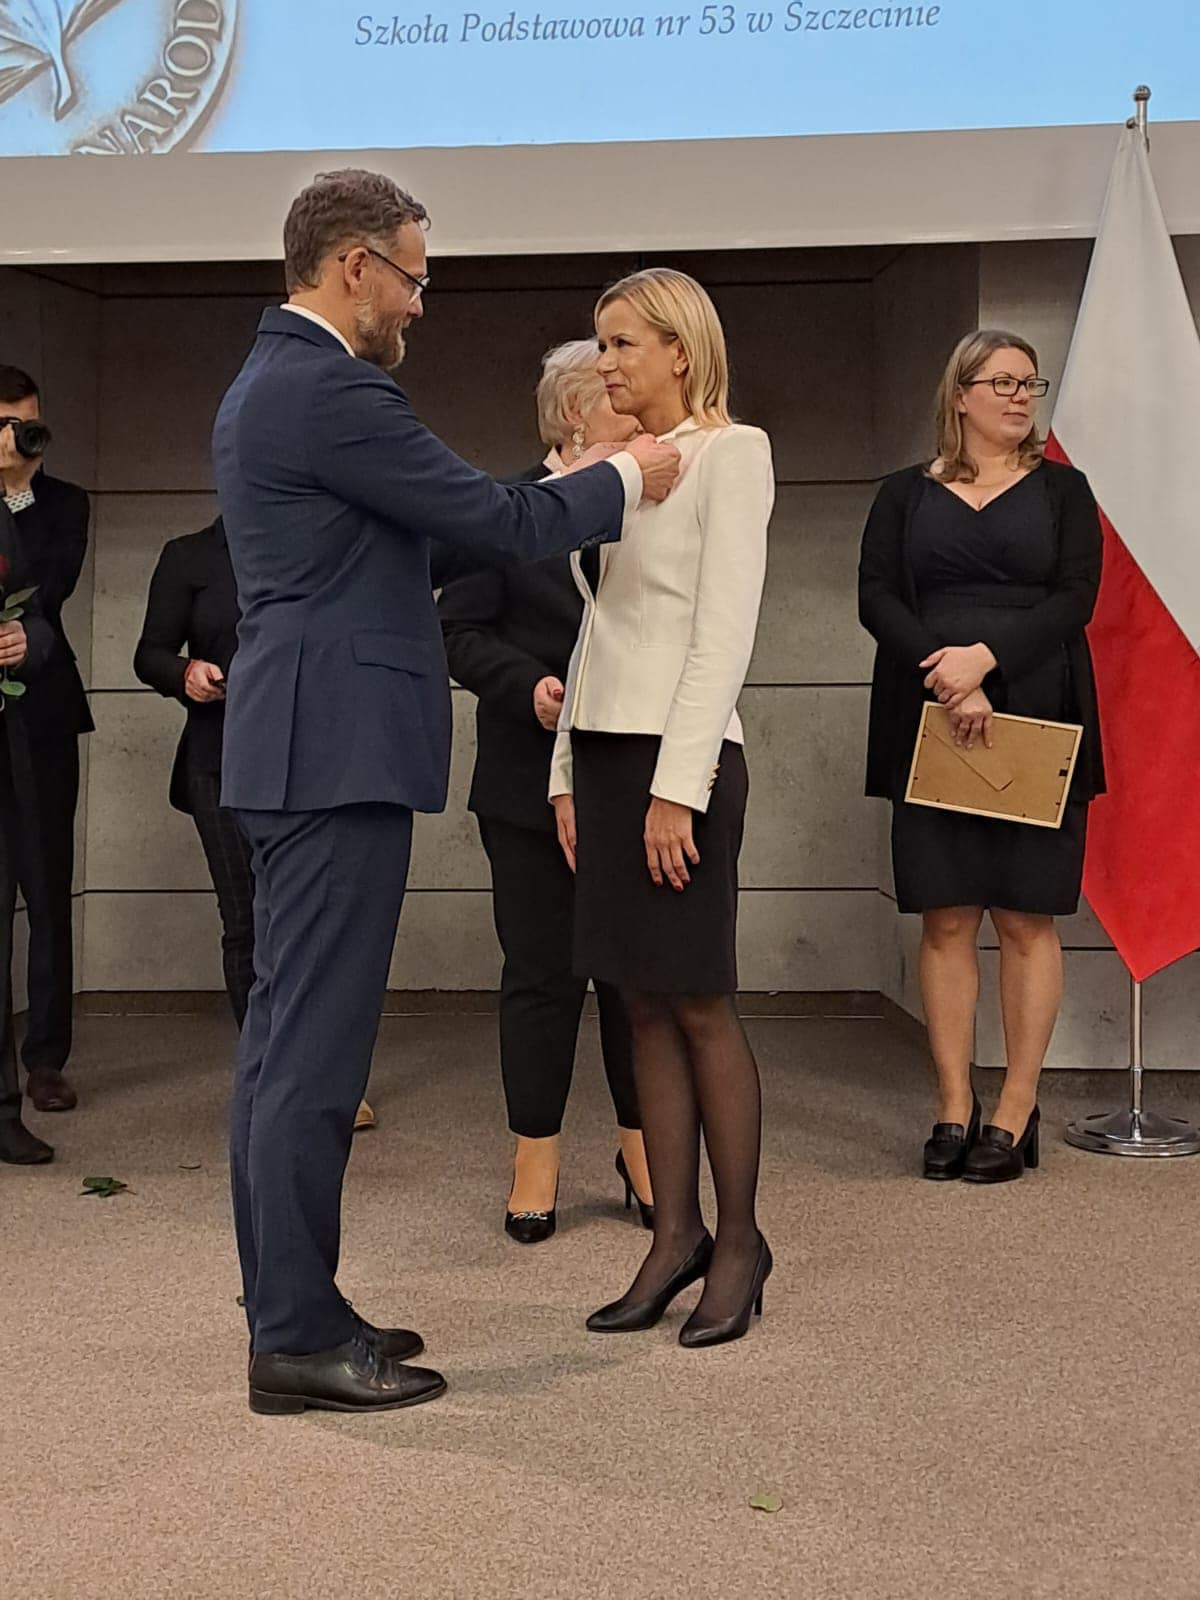 Wojewoda zachodniopomorski wręcza pani Małgorzacie Olejniczak medal Komisji Edukacji Narodowej